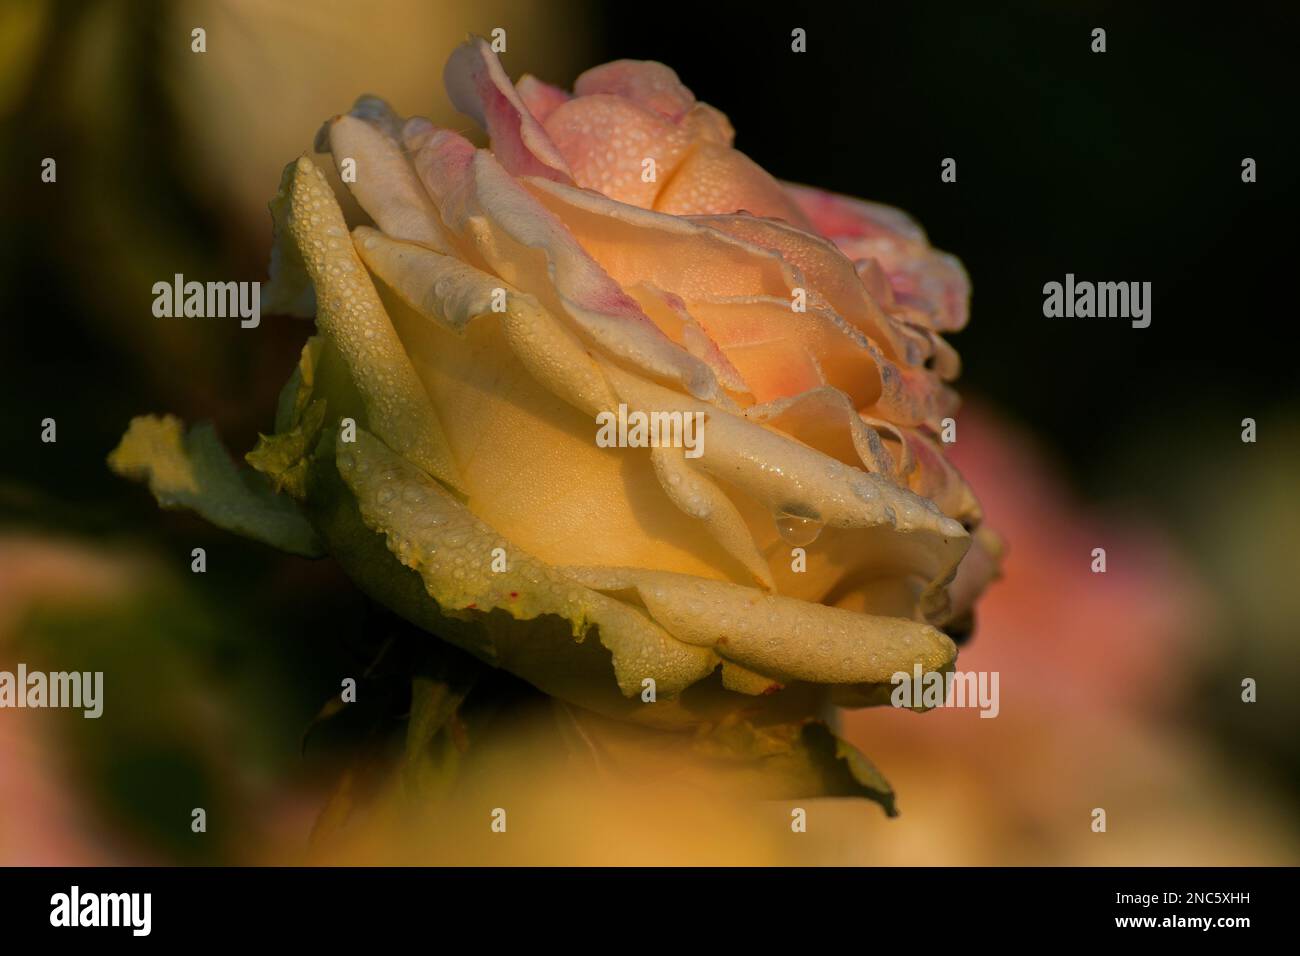 Gocce di rugiada sui petali gialli di rosa, fiore della pianta perenne boscosa del genere Rosa, Rosaceae. Inizio inverno mattina fiore natura Foto Stock